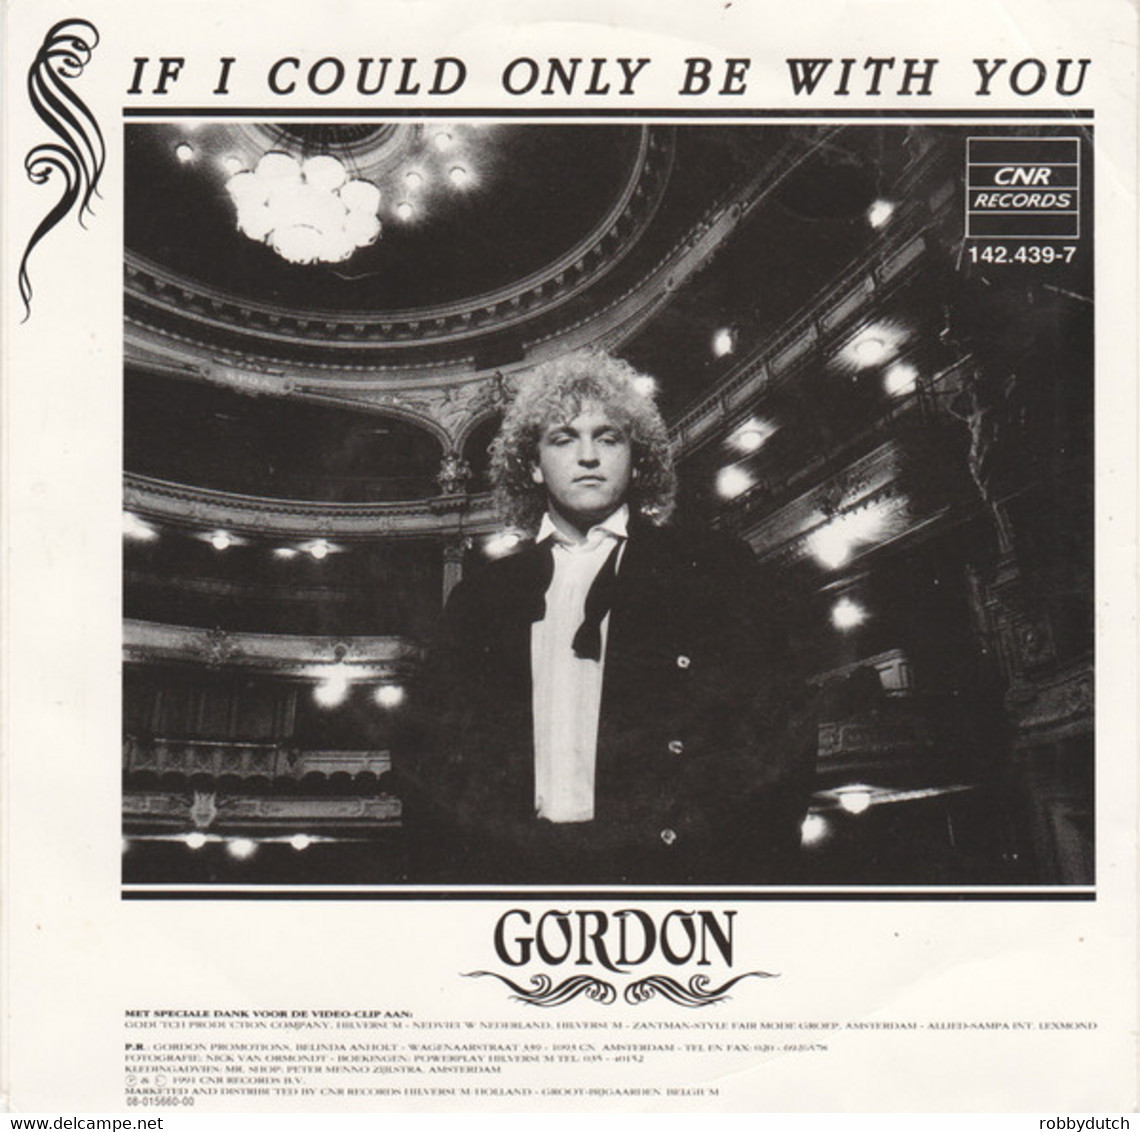 * 7" *  GORDON - KON IK MAAR EVEN BIJ JE ZIJN (Holland 1991) - Autres - Musique Néerlandaise